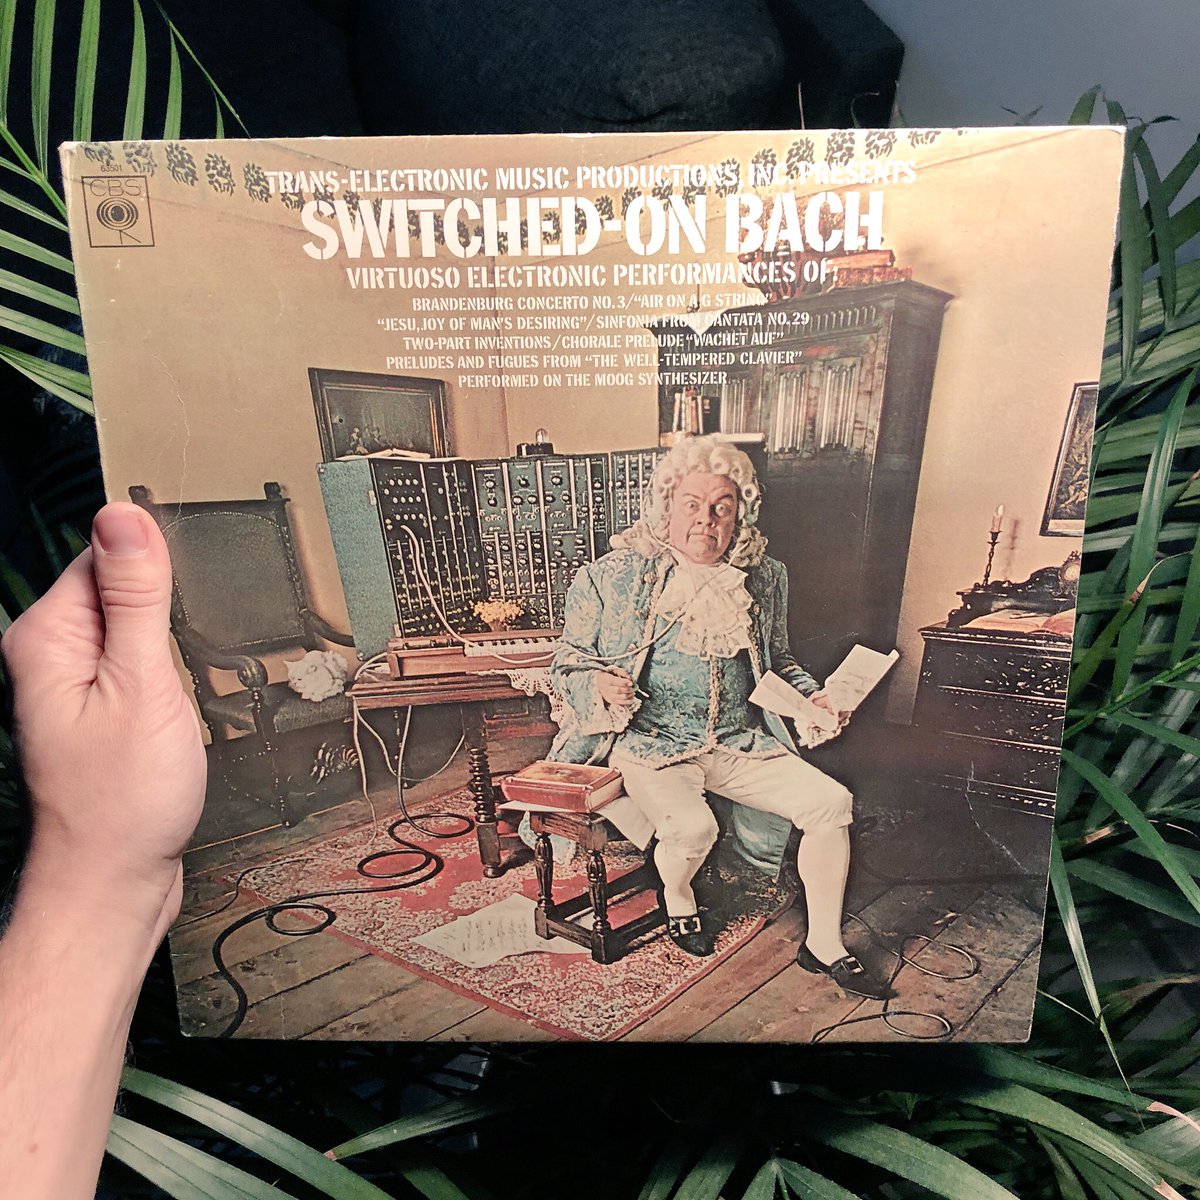 ”Switched-On Bach” 50 vuotta! Suuren yleisön syntetisaattoreille tutustuttanut Wendy Carlosin albumi julkaistiin lokakuussa 1968. Löytyi myös faijan levyhyllystä josta sen sosialisoin. #Moog #WendyCarlos #SwitchedOnBach